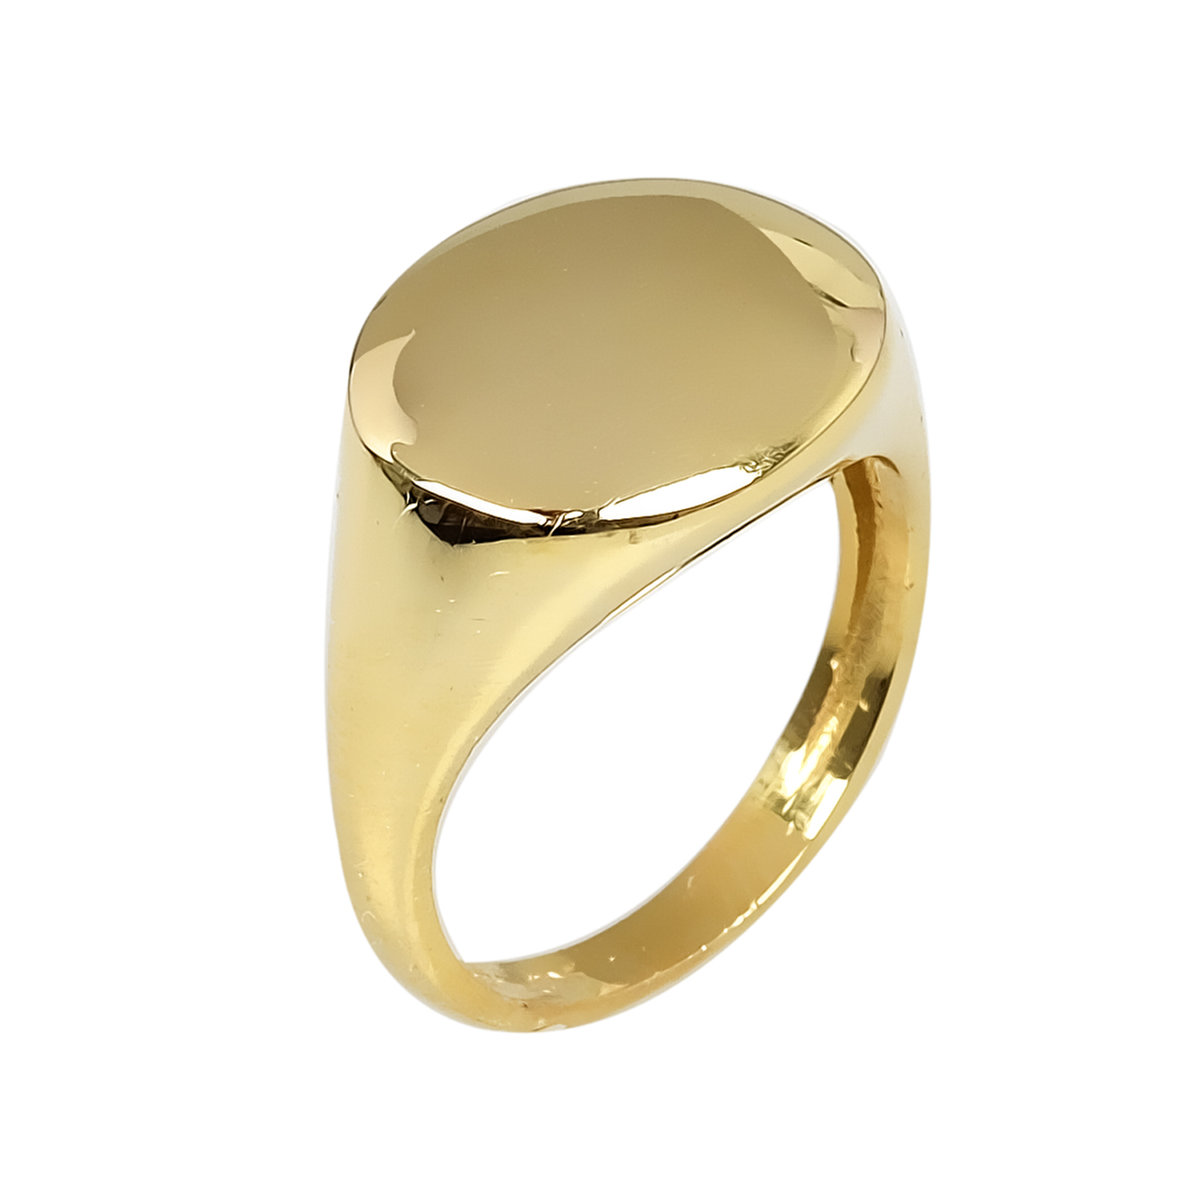 Κοσμήματα με Δυνατότητα Χάραξης, Δαχτυλίδια με Δυνατότητα Χάραξης κίτρινο